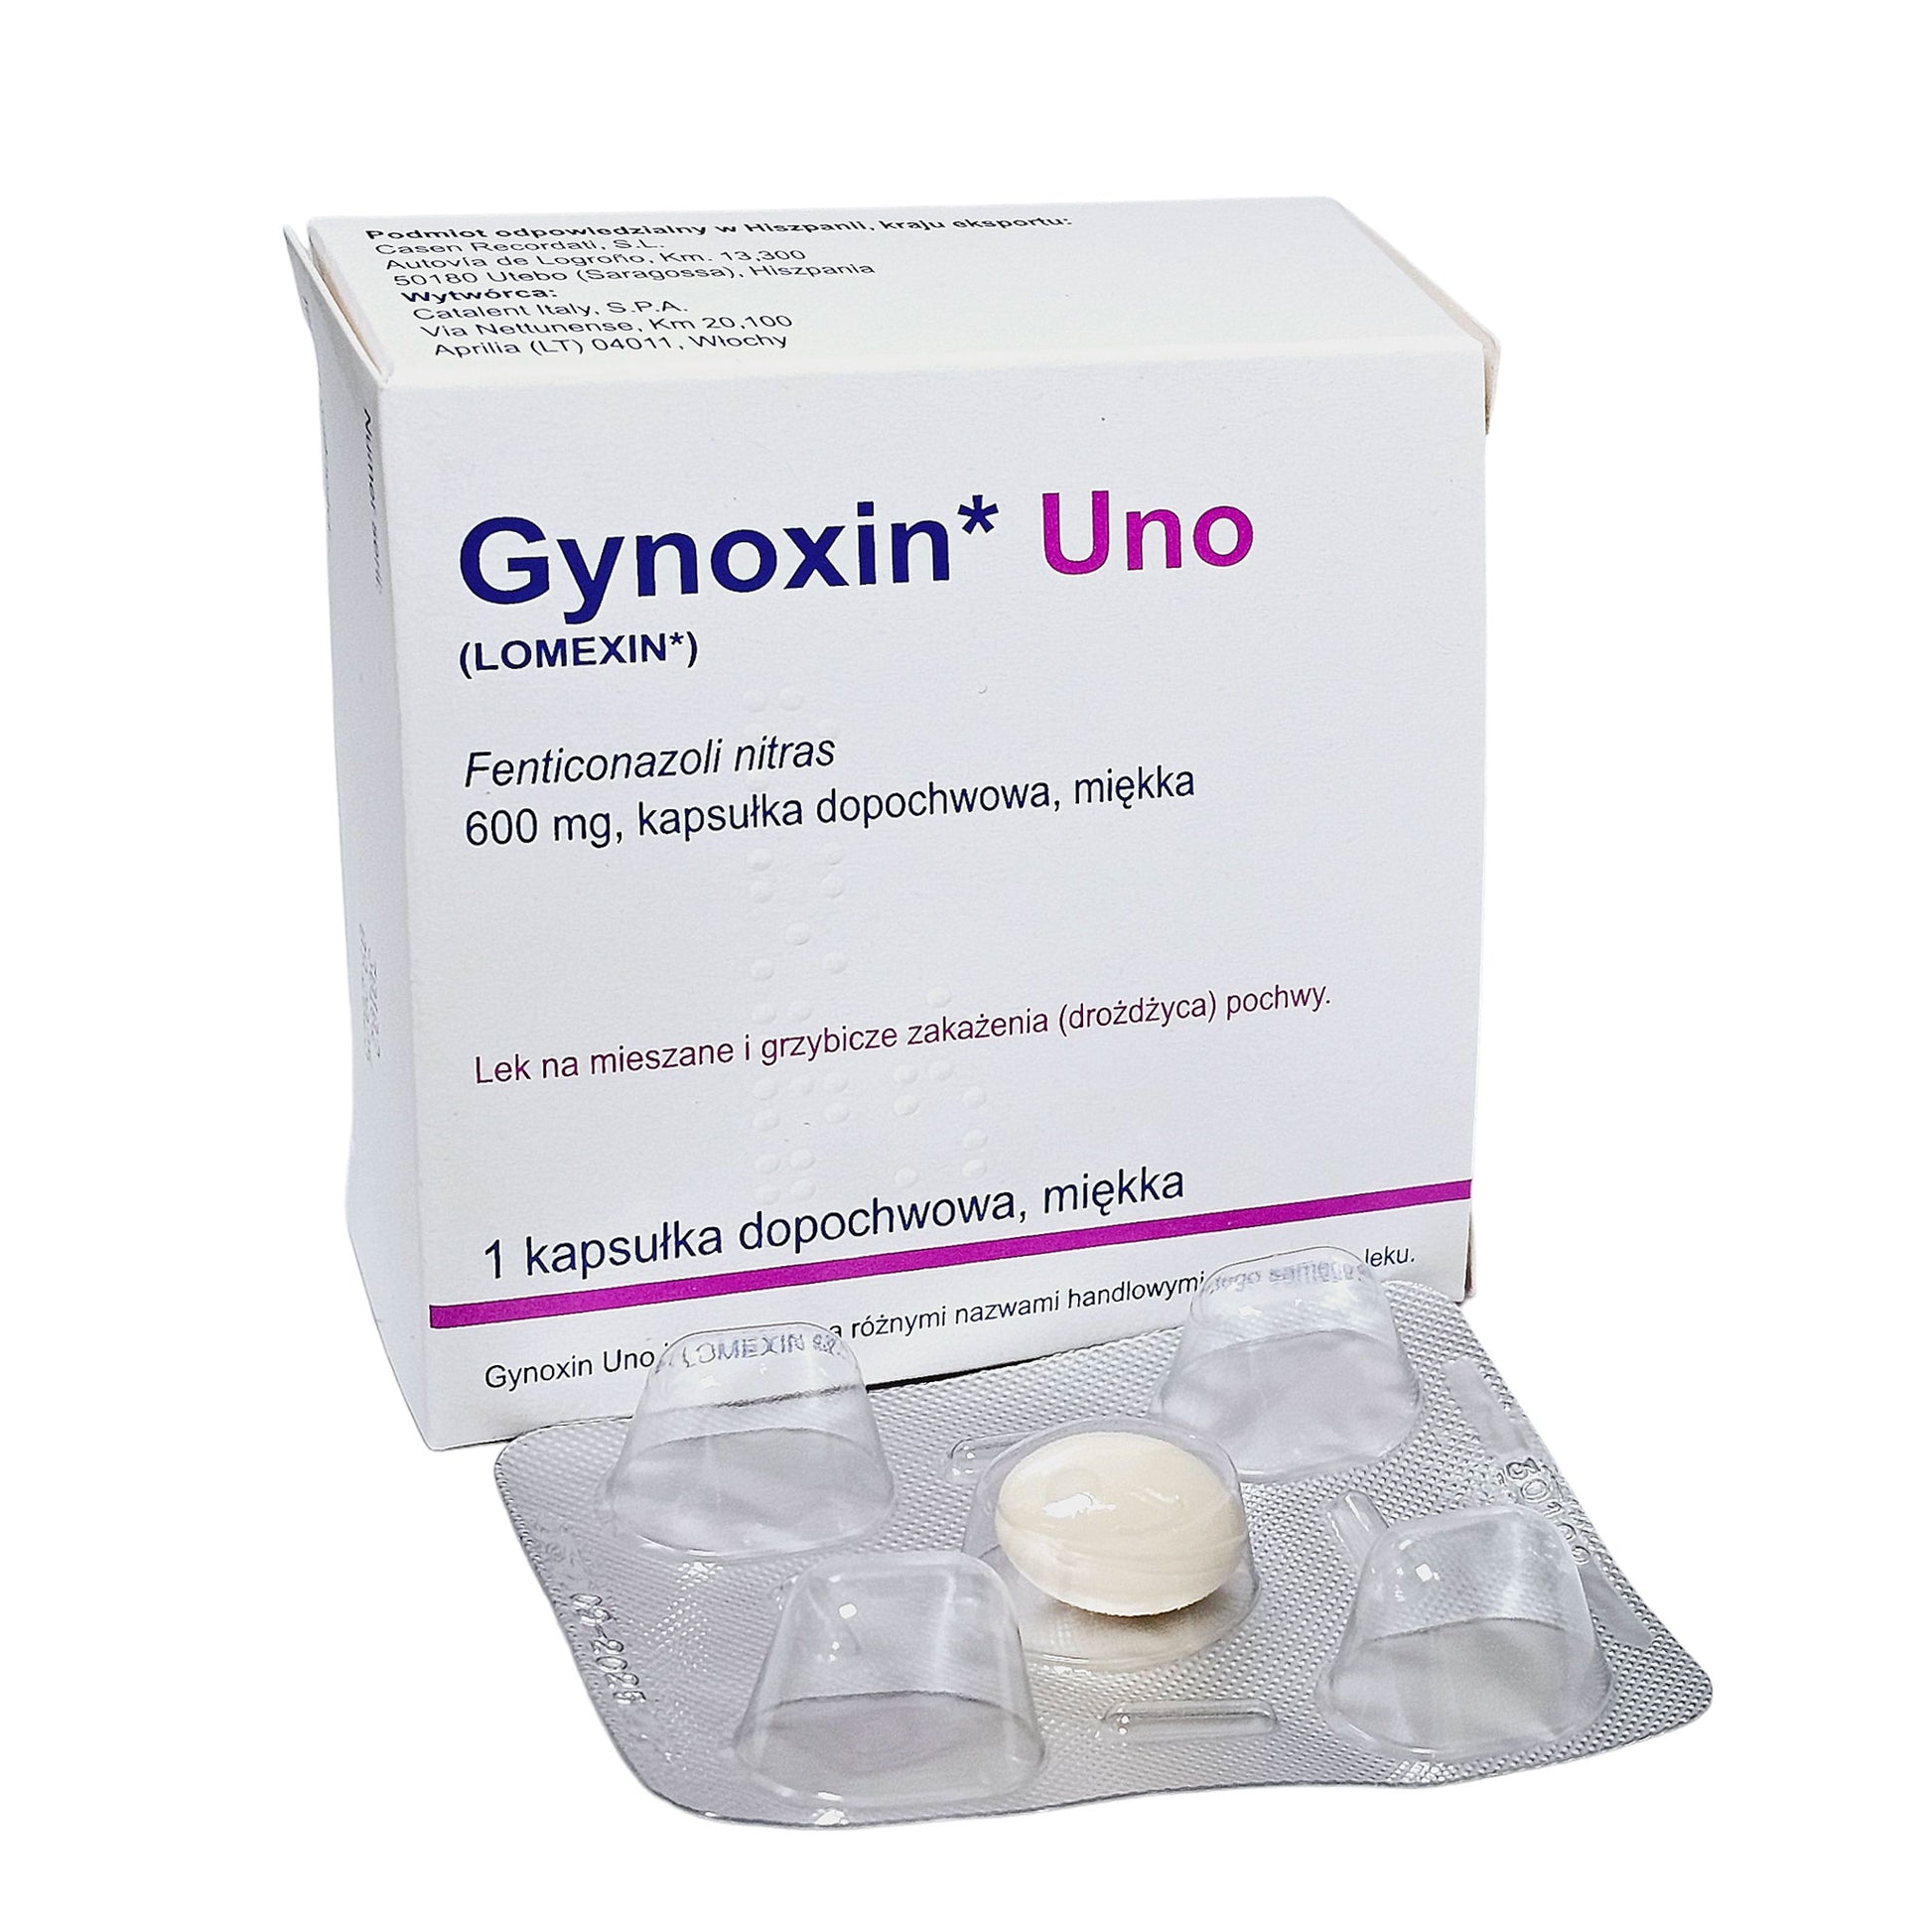 Gynoxin Uno